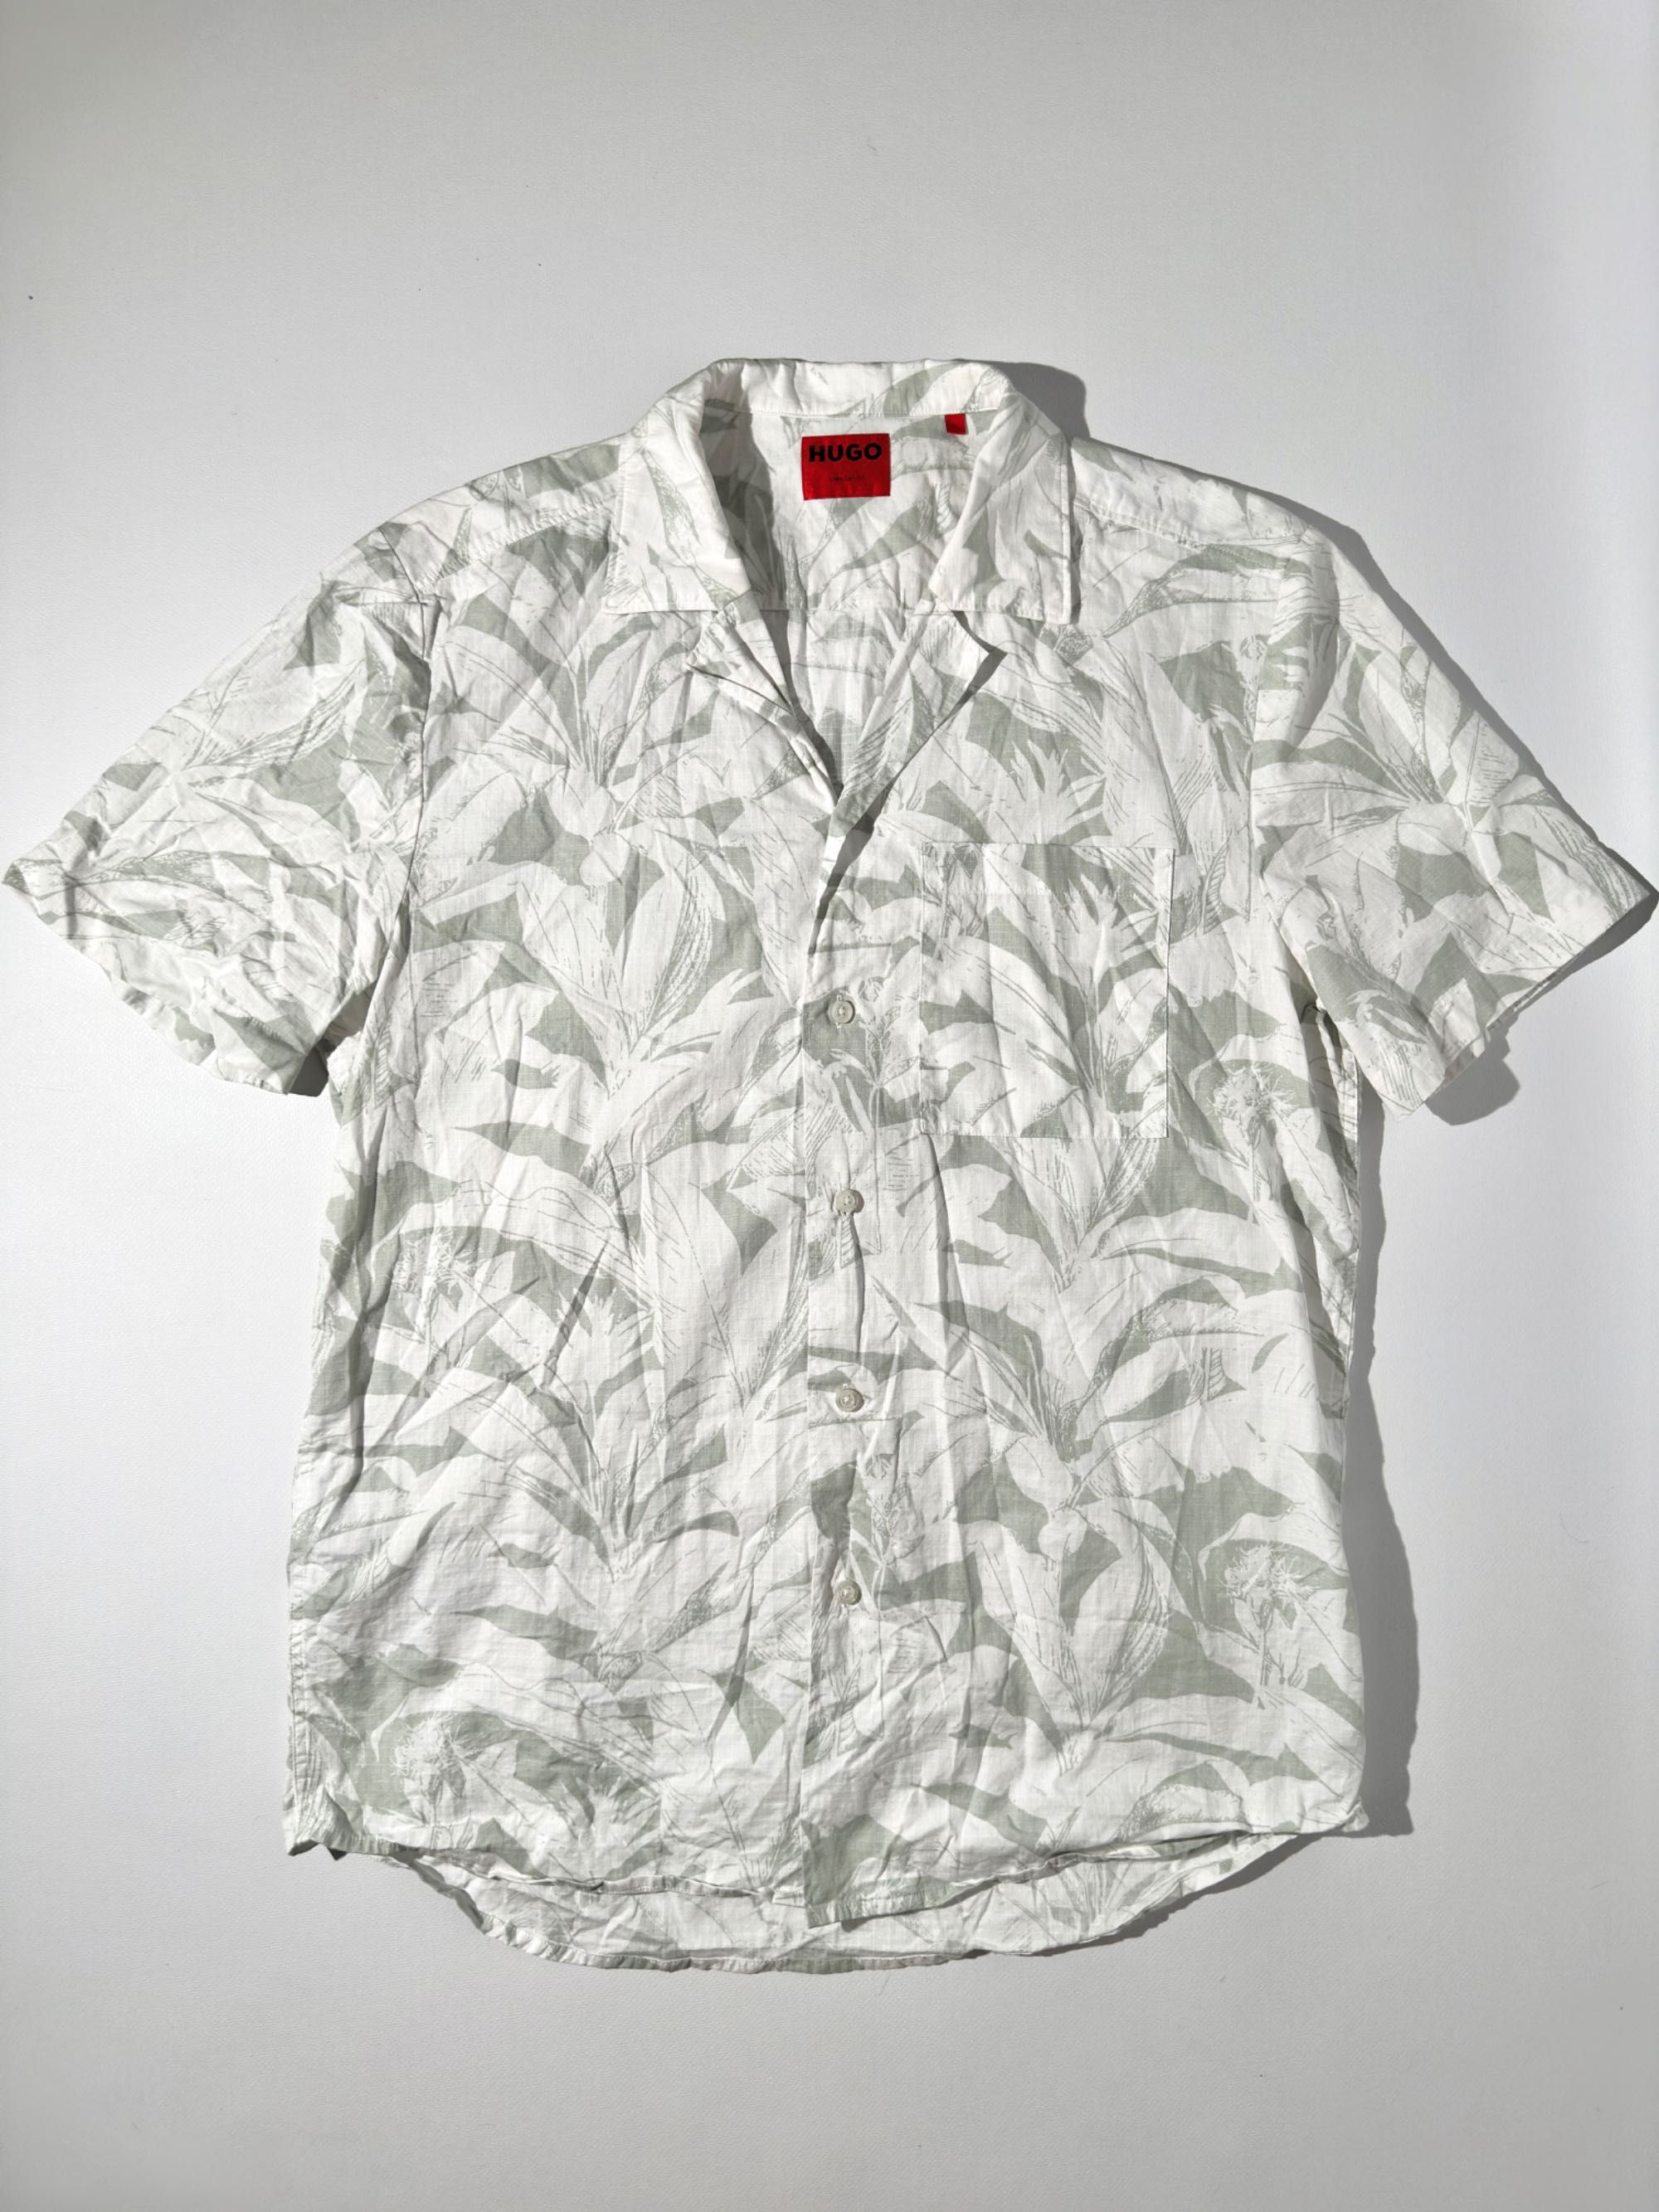 Hugo boss ellino белая рубашка с принтом листьев